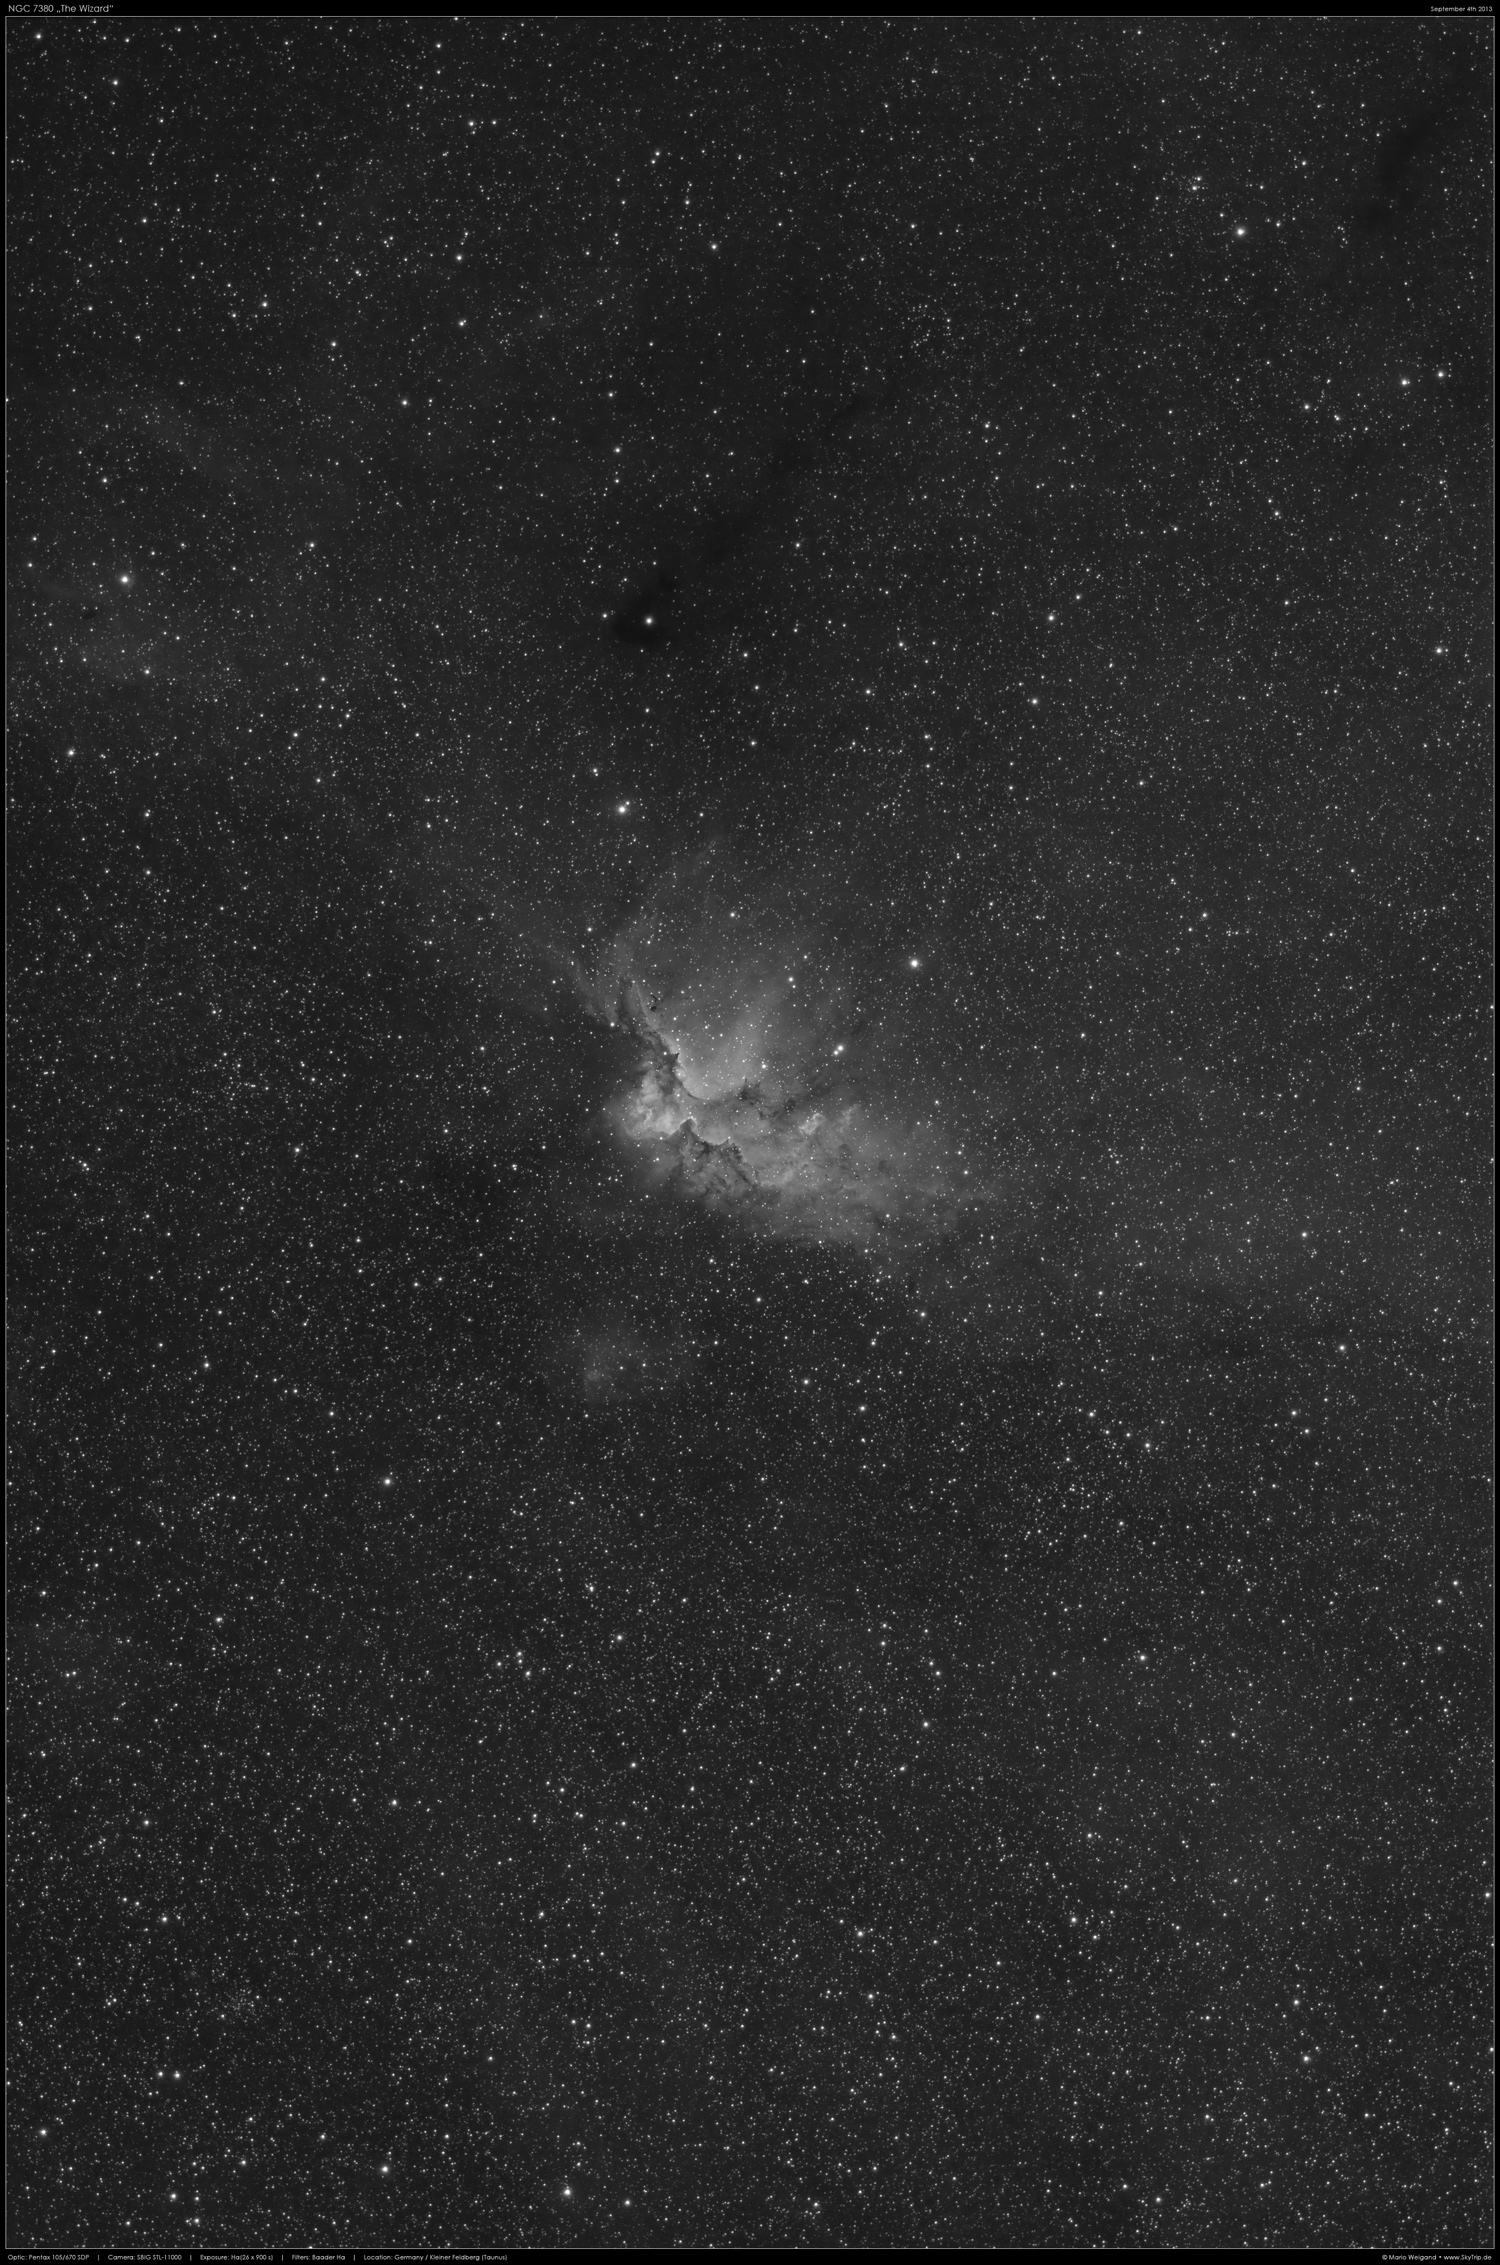 NGC 7380 / LBN 506 / LBN 511